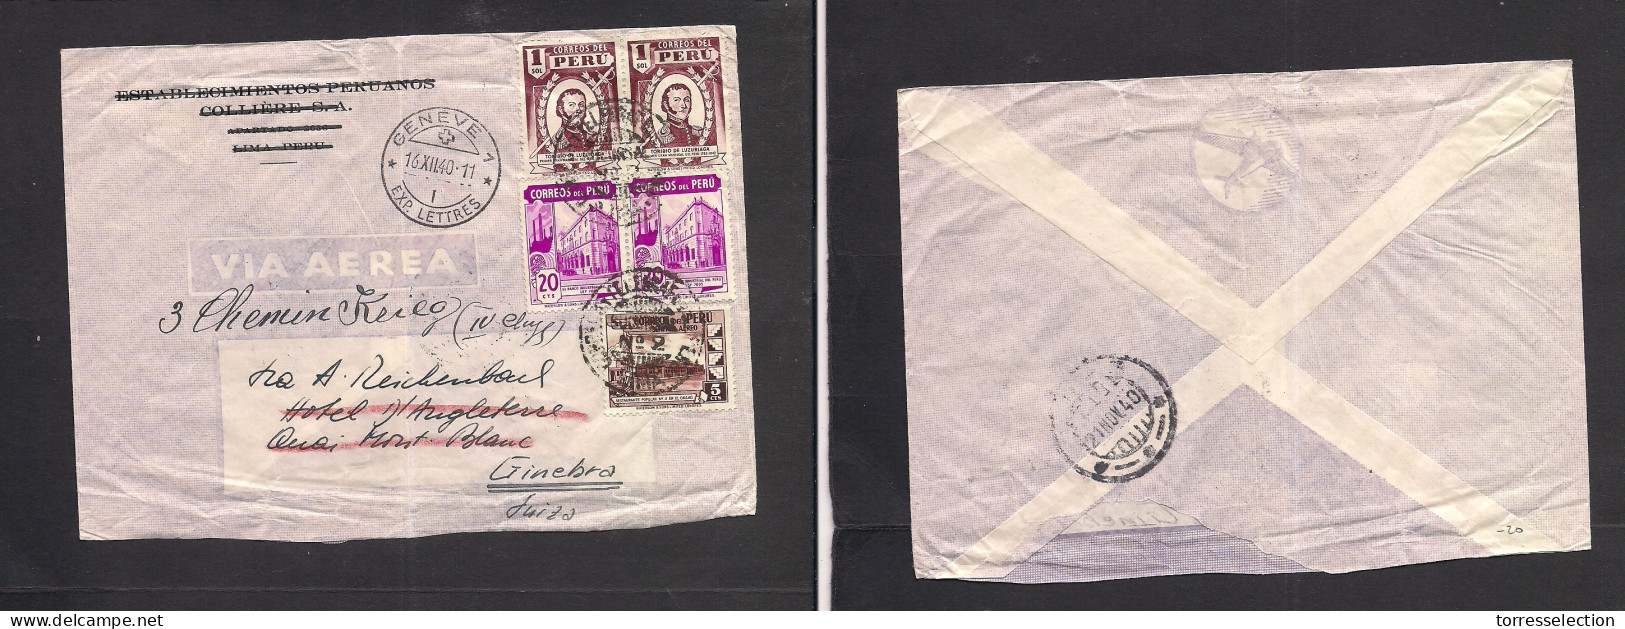 PERU. 1940. Lima Suc 2 - Switzerland, Geneva (16 Dec) Air Multifkd Envelope, Fwded 2,45 Soles Rate. XSALE. - Perú